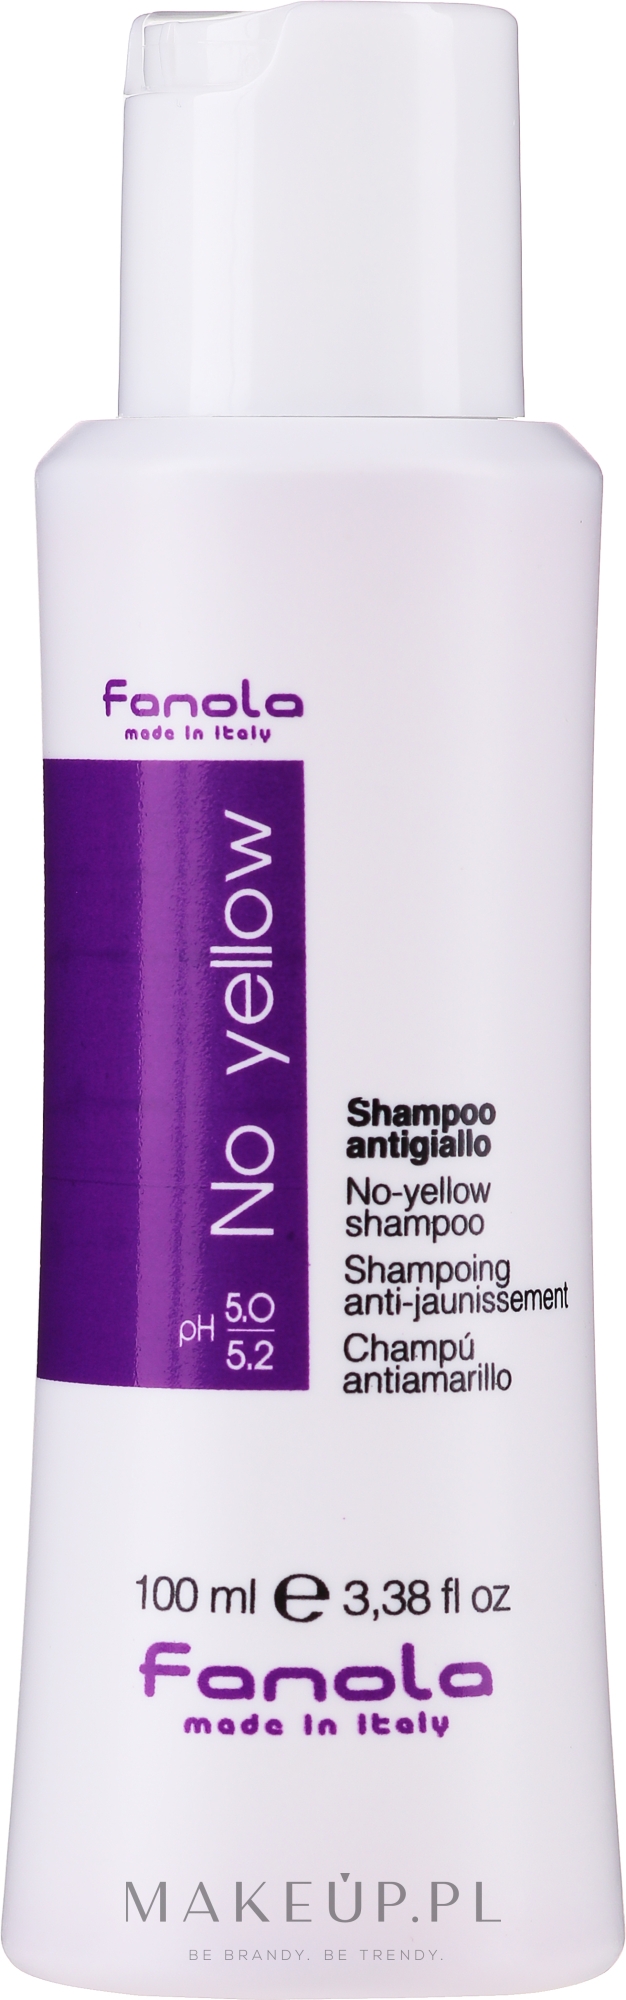 fanola szampon do włosów